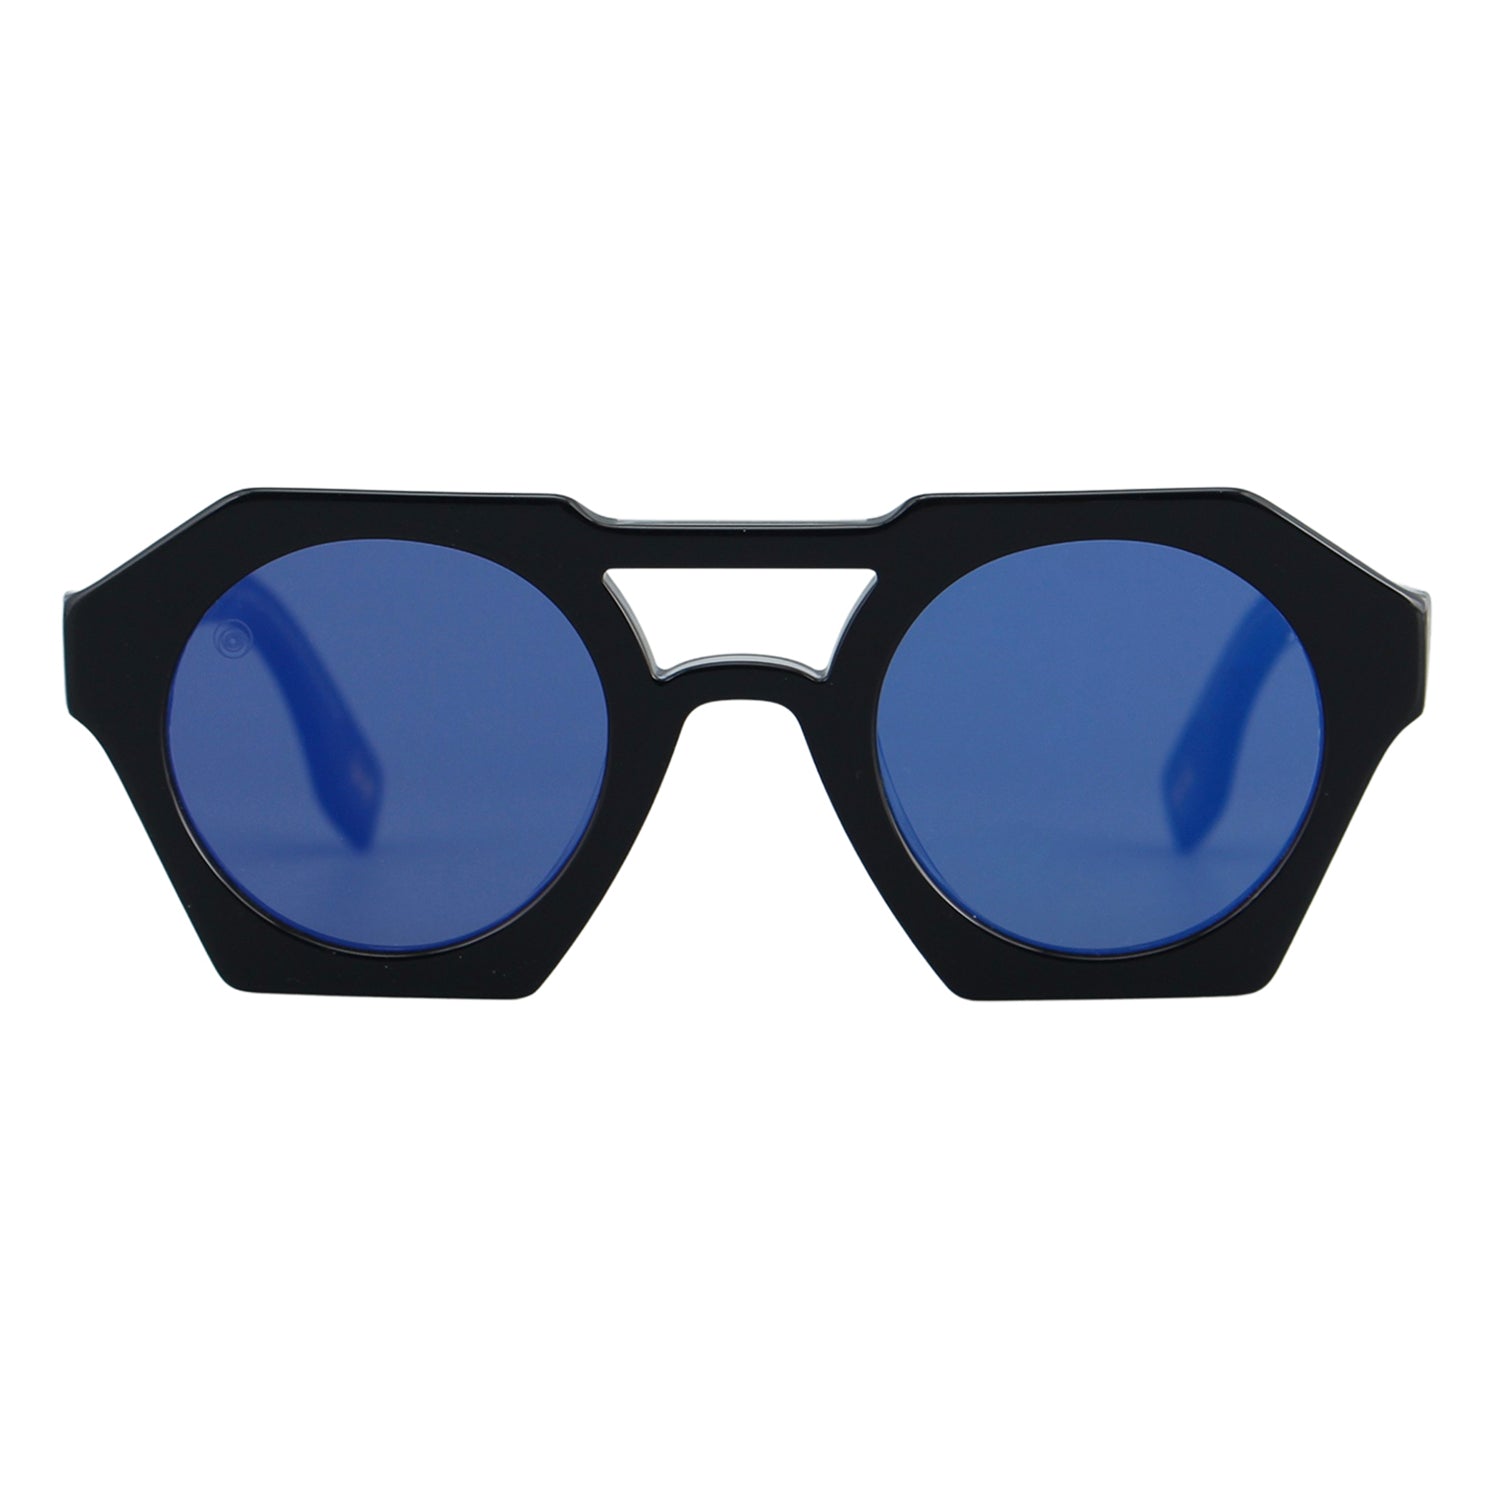 Taxxon ® Sunglasses  BLK 008 BLACK – TAXXON EYEWEAR